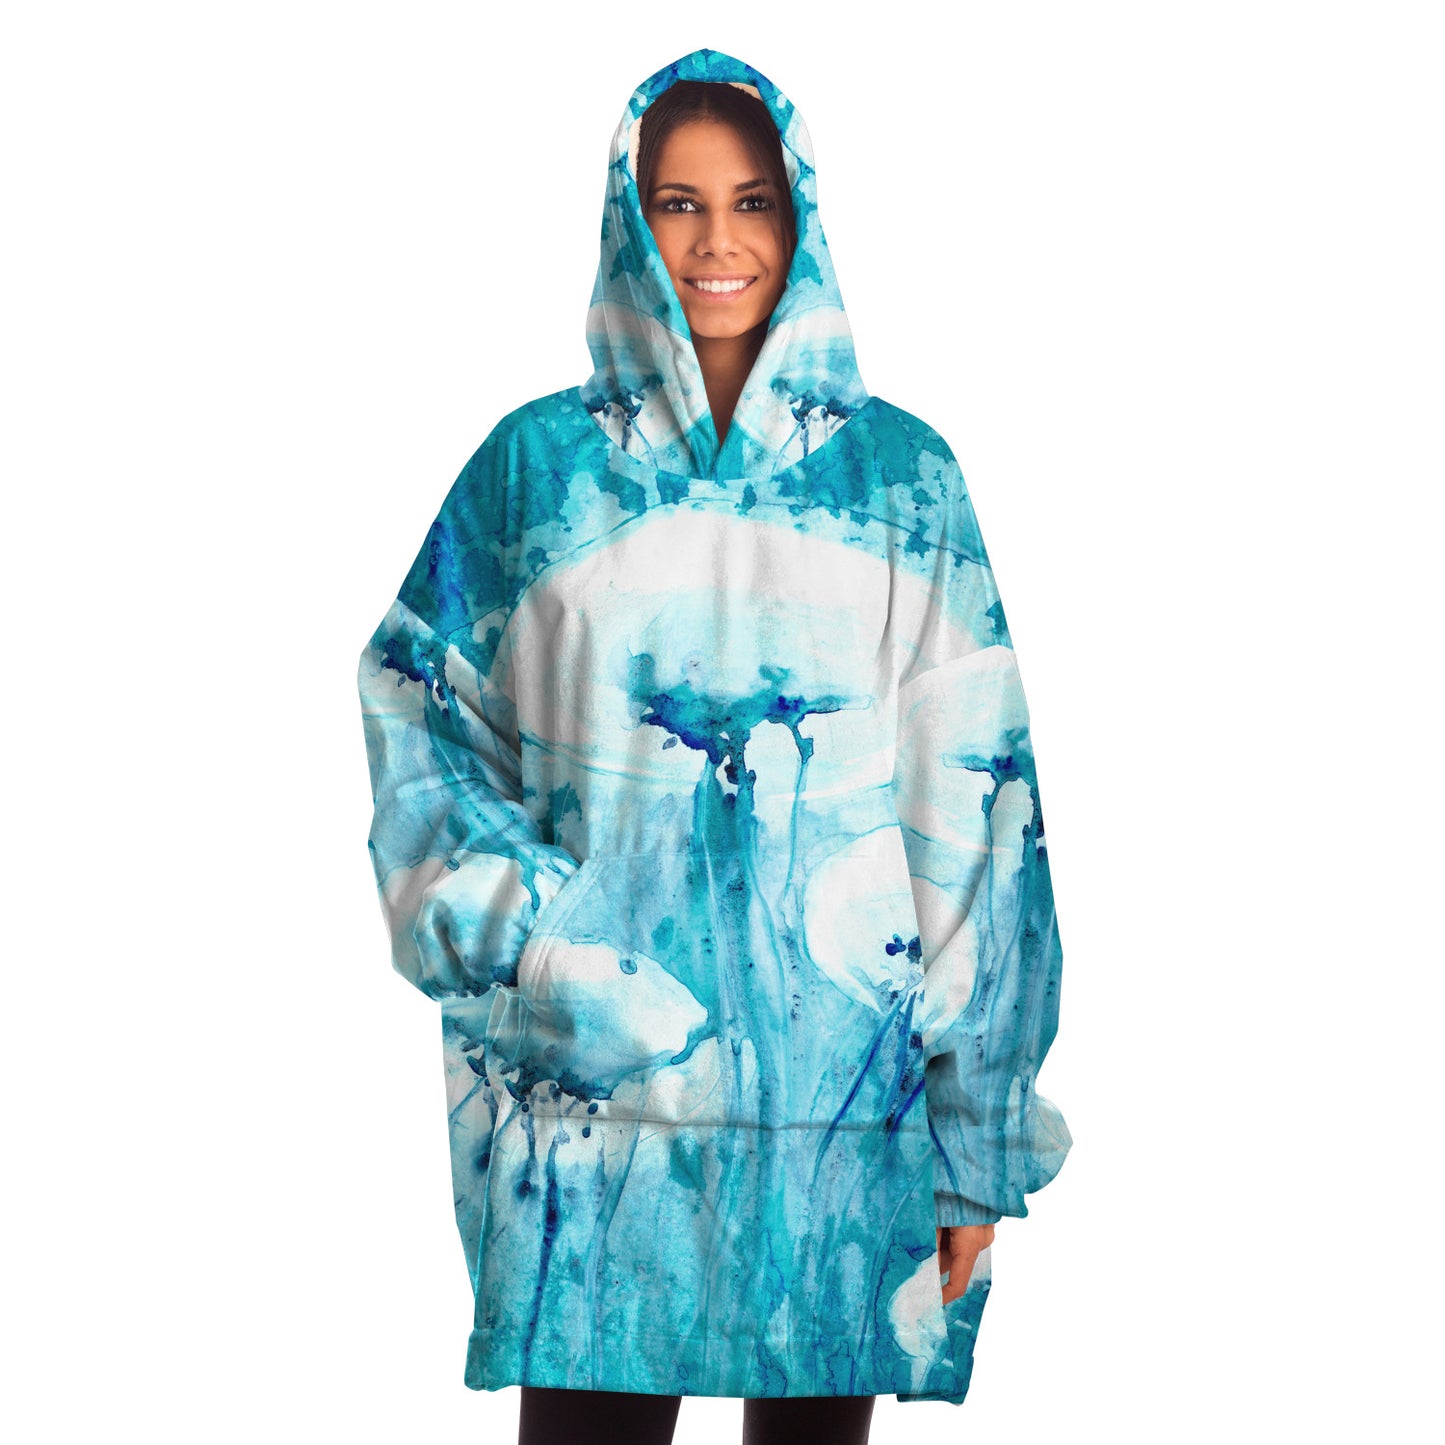 Jellyfish Snug Hoodie Wearable Blanket